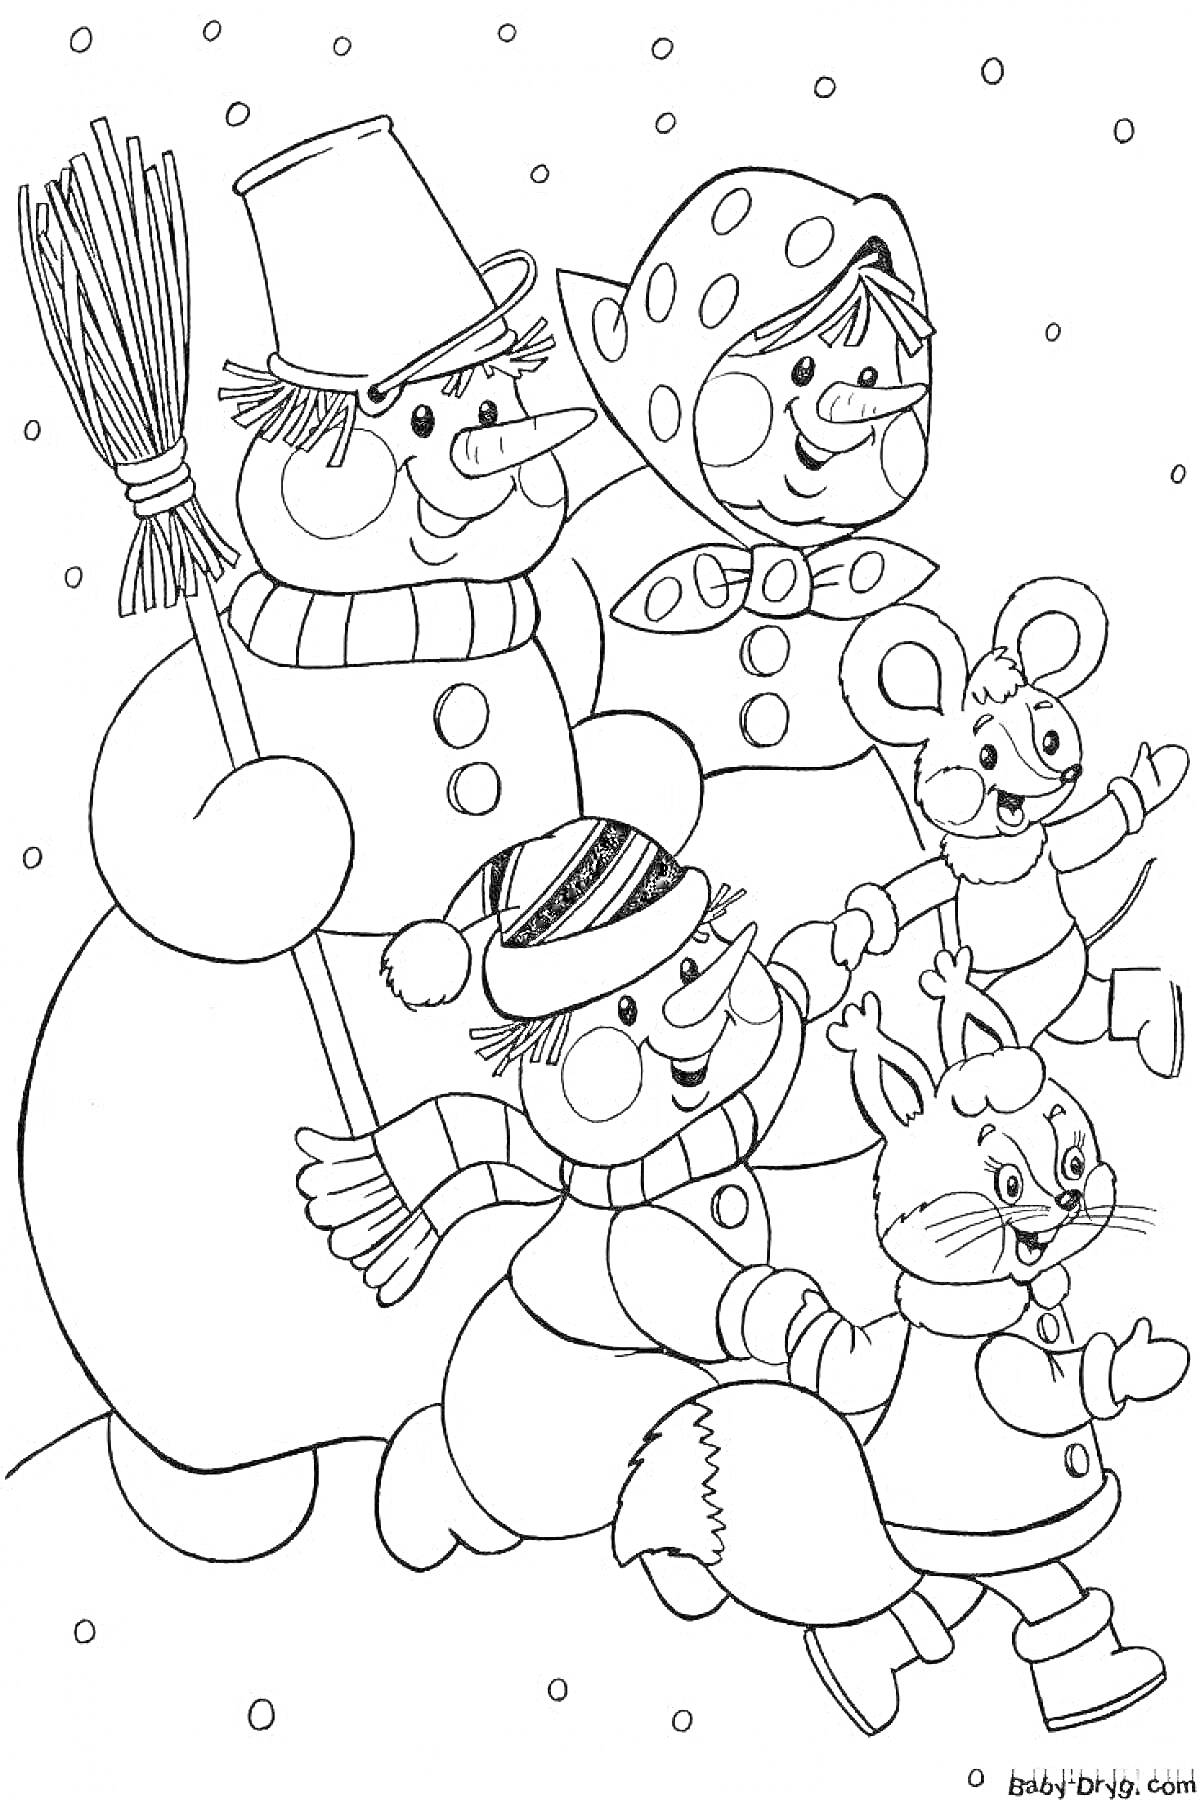 Раскраска Снеговик с веником, девочка в косынке, мальчик в шапке, мышонок, зайчонок на фоне снега